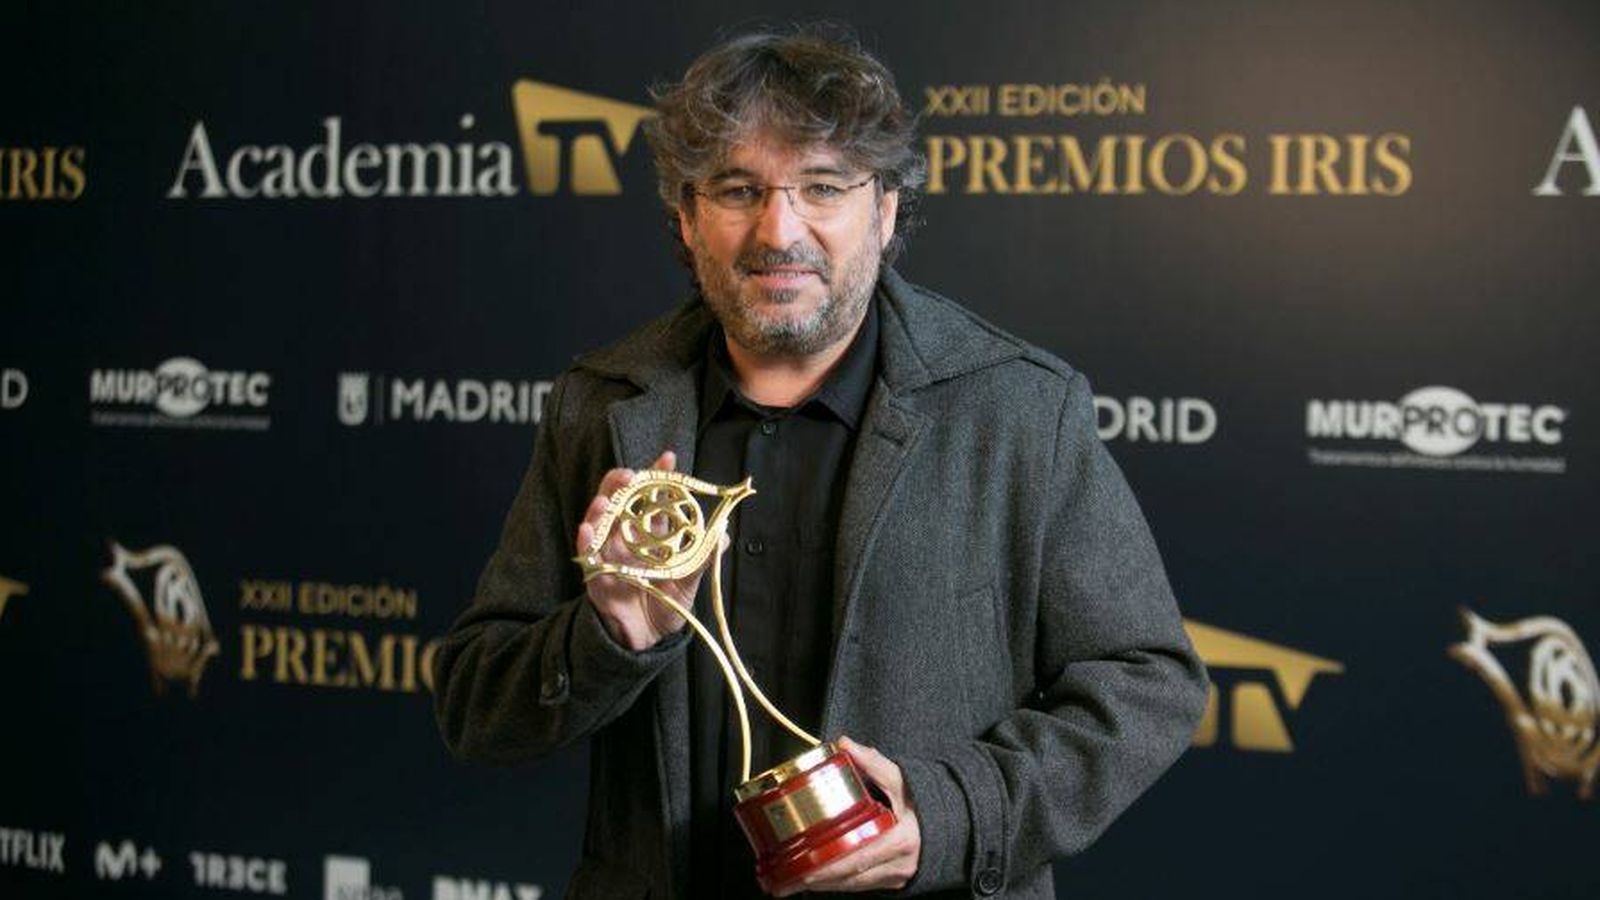 El presentador Jordi Évole. (Academia de la Televisión)